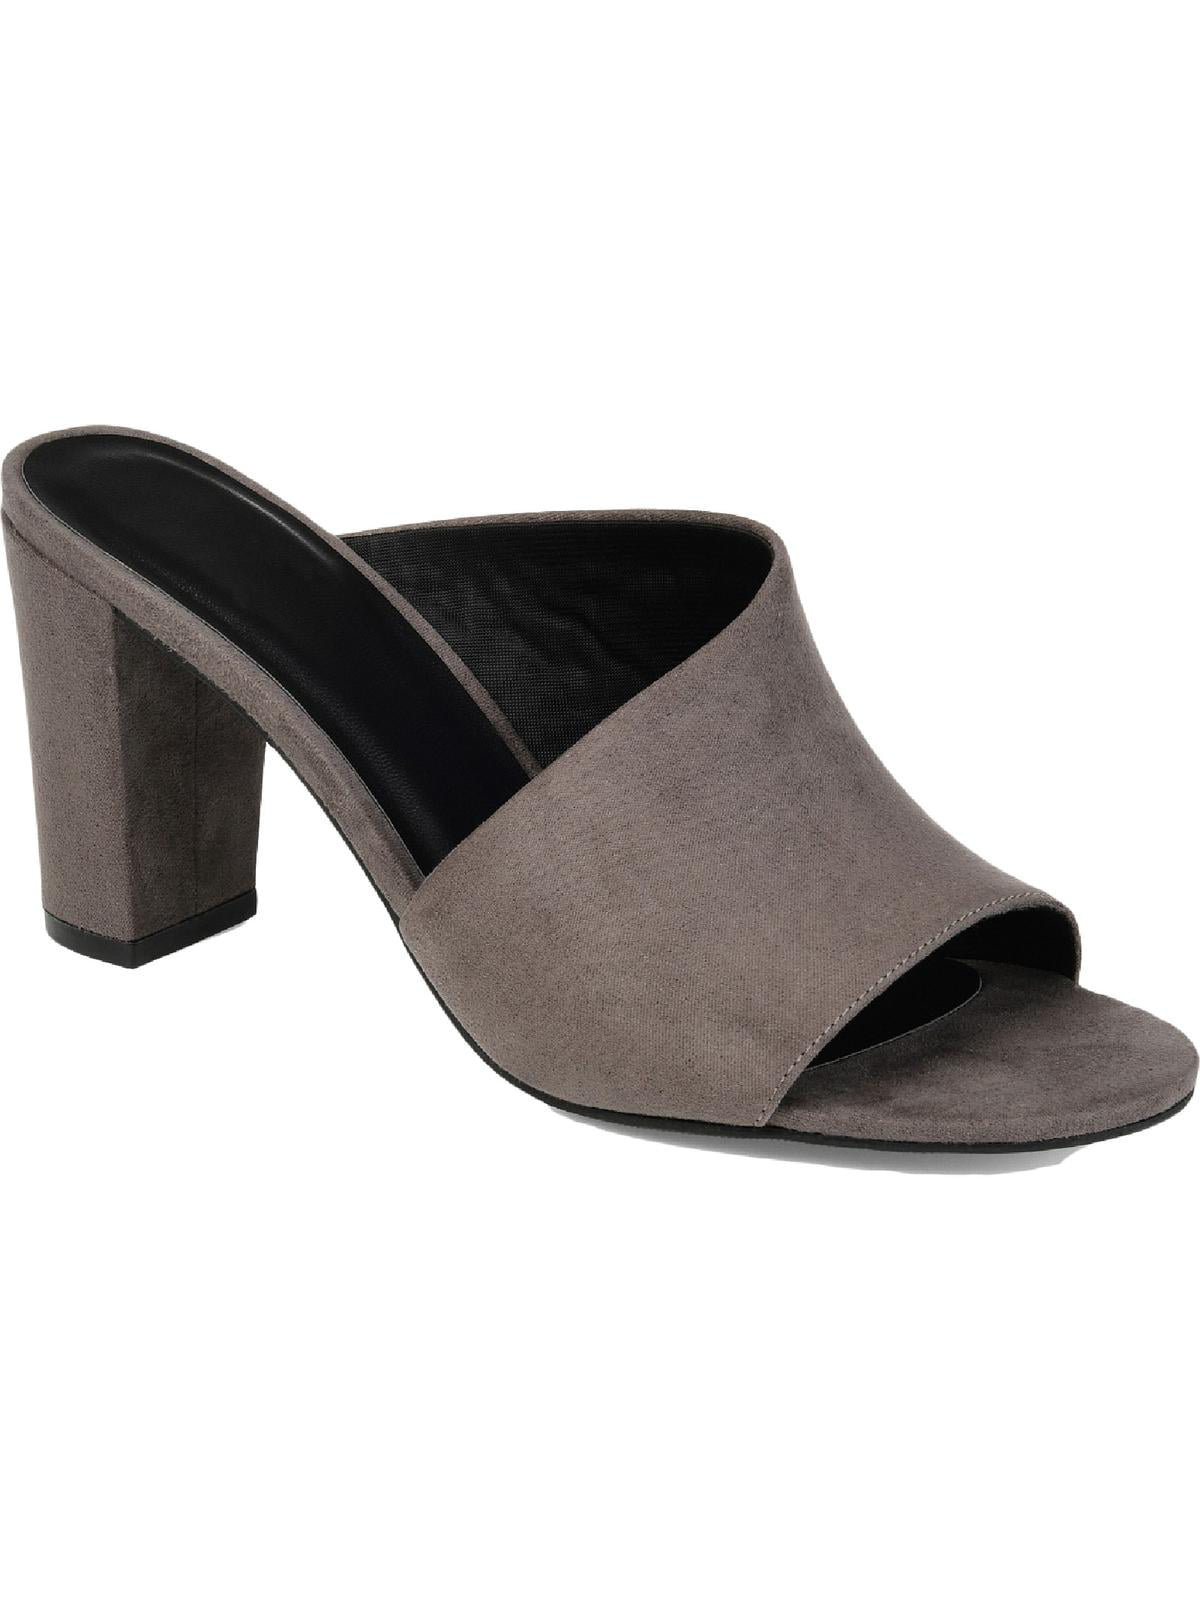 Journee Collection Womens Allea Slip On Block Heel Mule Sandals ...